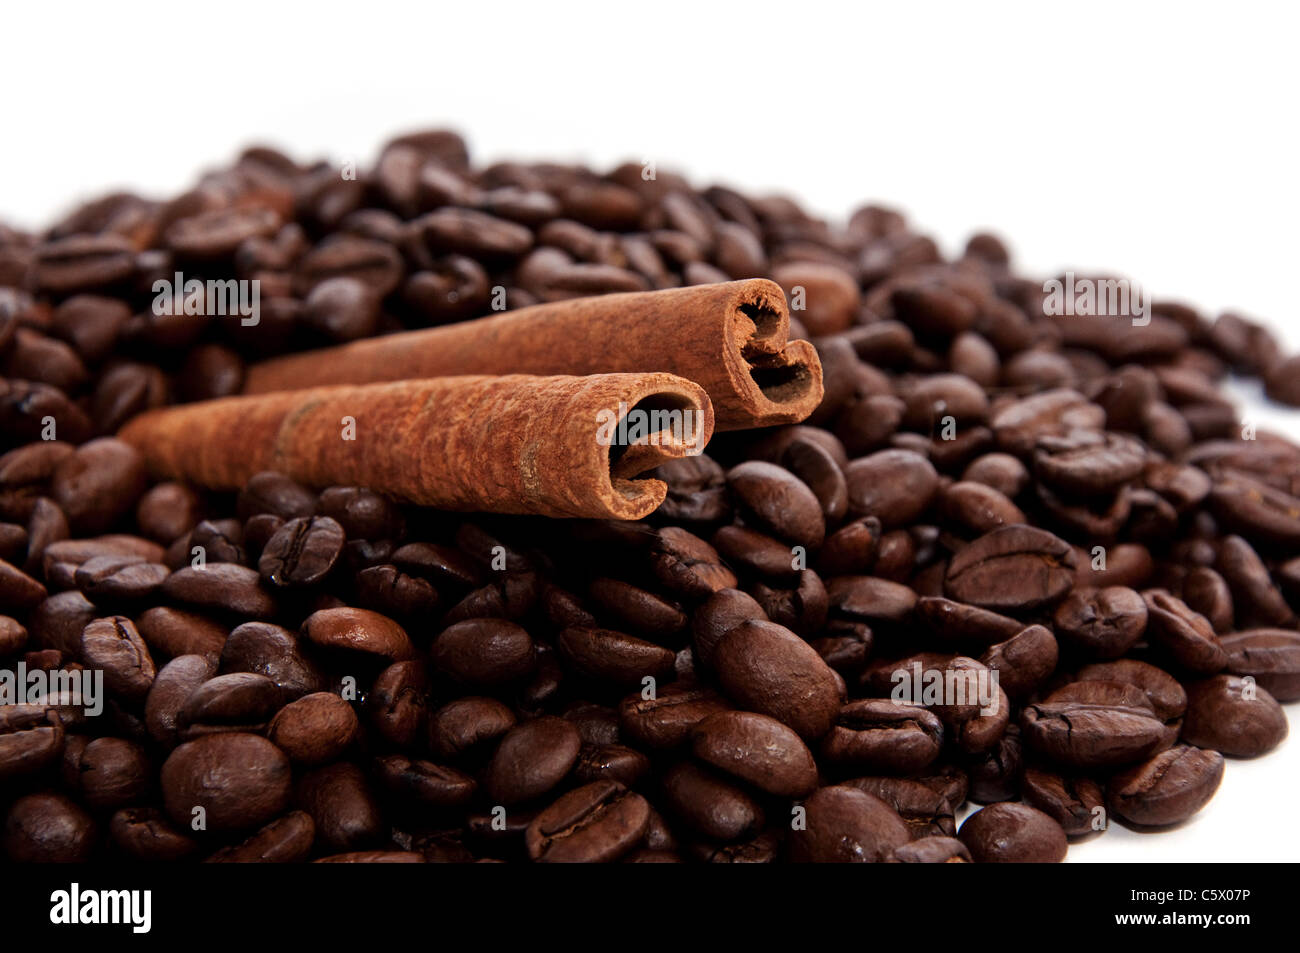 Les grains de café et le bâton de cannelle, près de l'image Banque D'Images